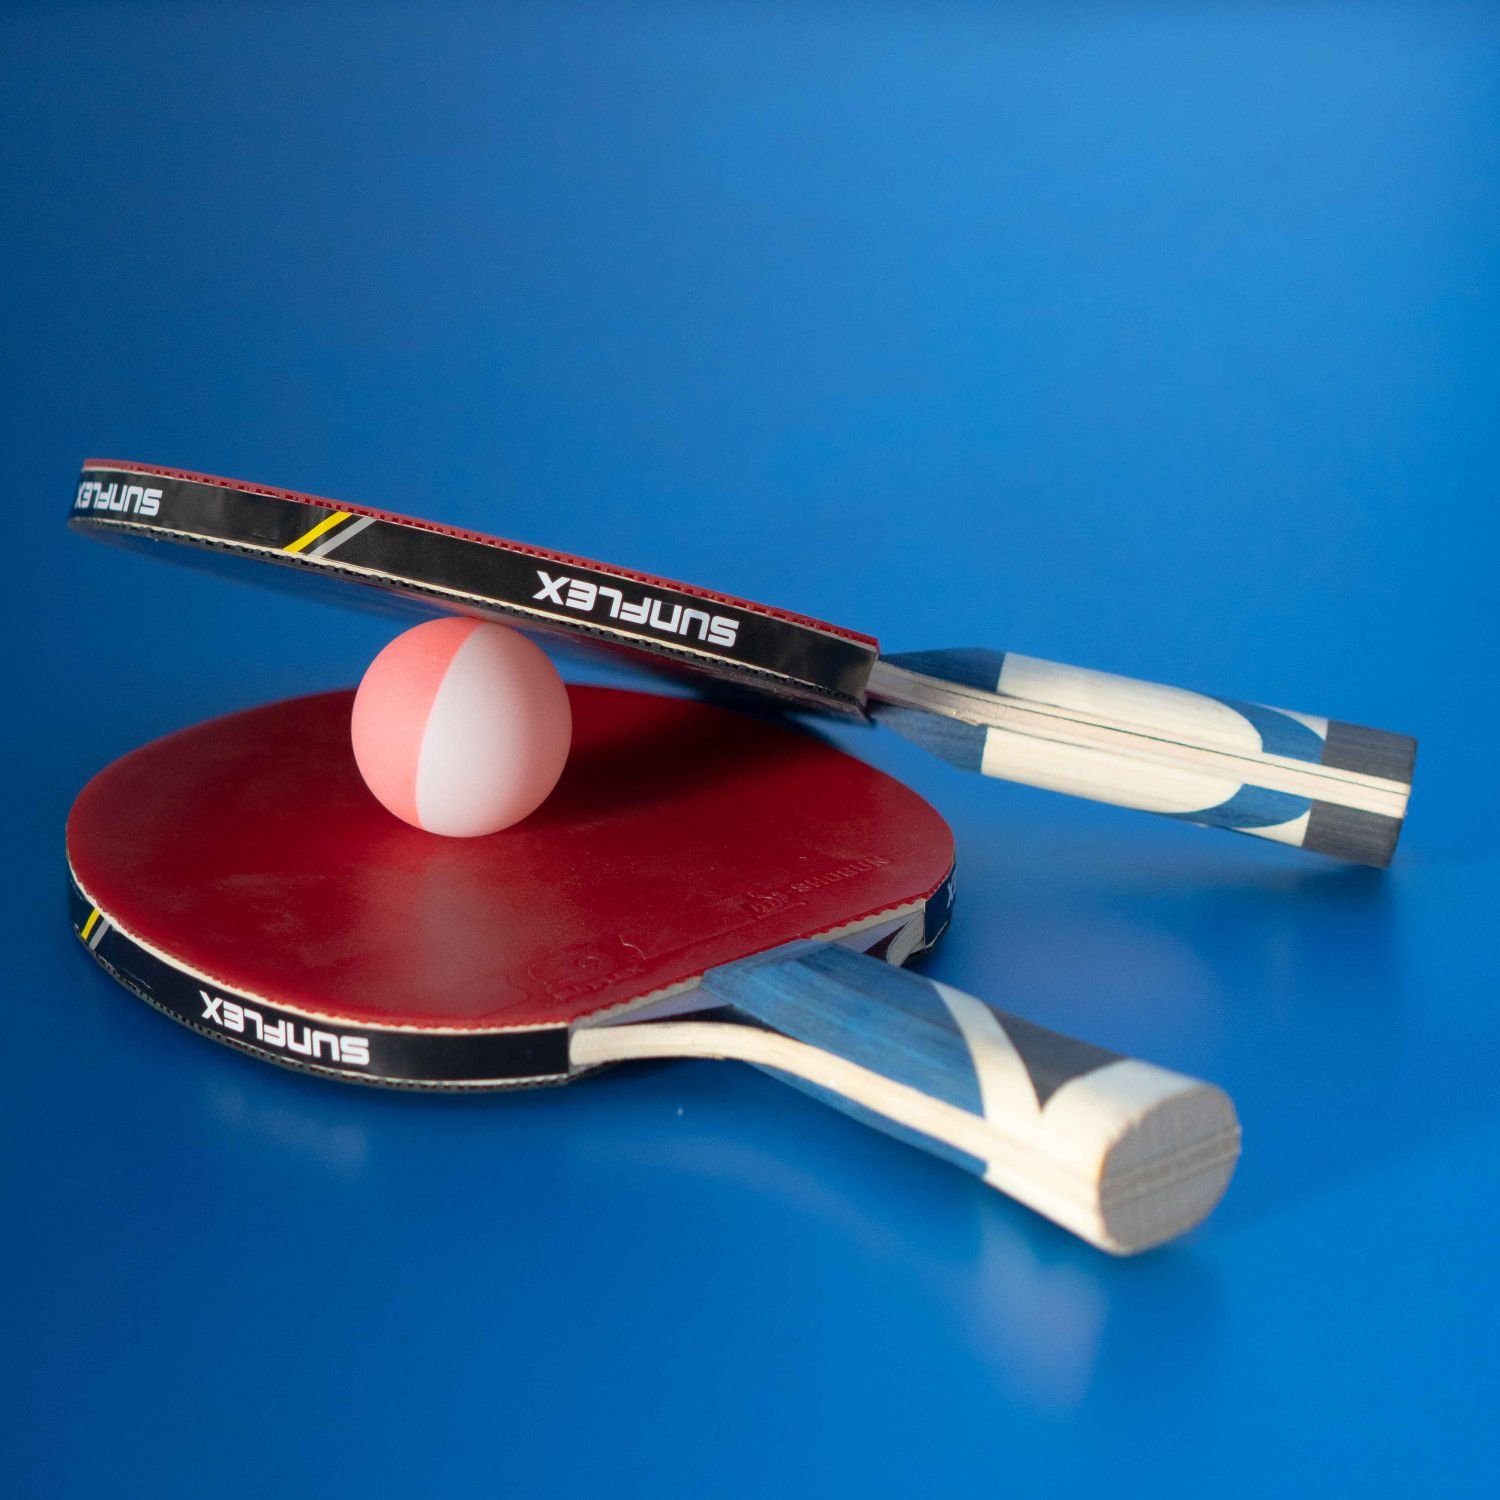 Ball Gelb-Pink, Tischtennis 24 Bälle Tischtennisball Tischtennisball Sunflex Balls Bälle